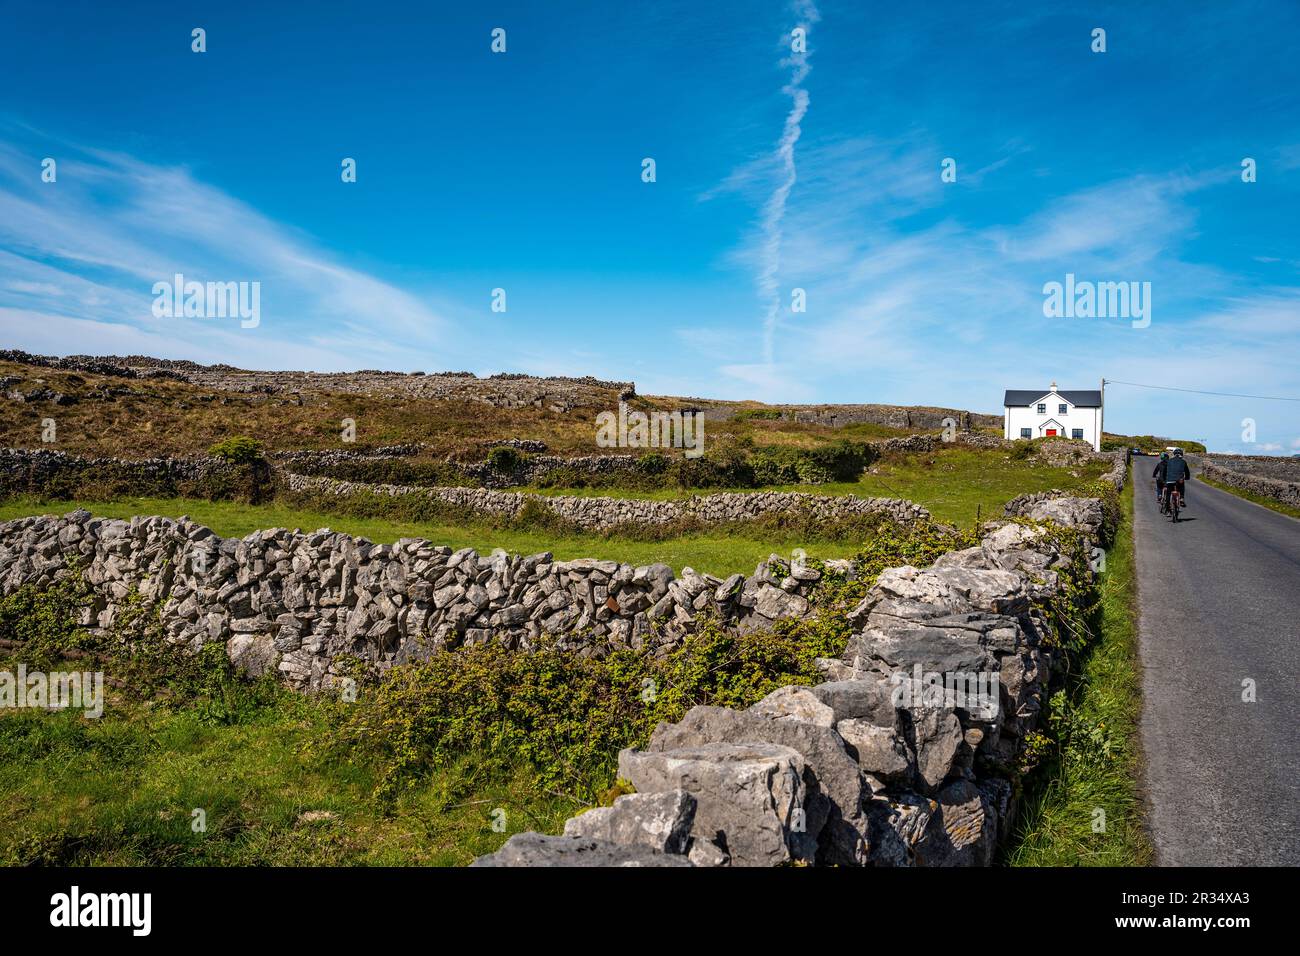 Paysage d'Inis Mór, ou Inishmore, la plus grande des îles d'Aran dans la baie de Galway, au large de la côte ouest de l'Irlande, avec des maisons et des murs en pierre. Banque D'Images